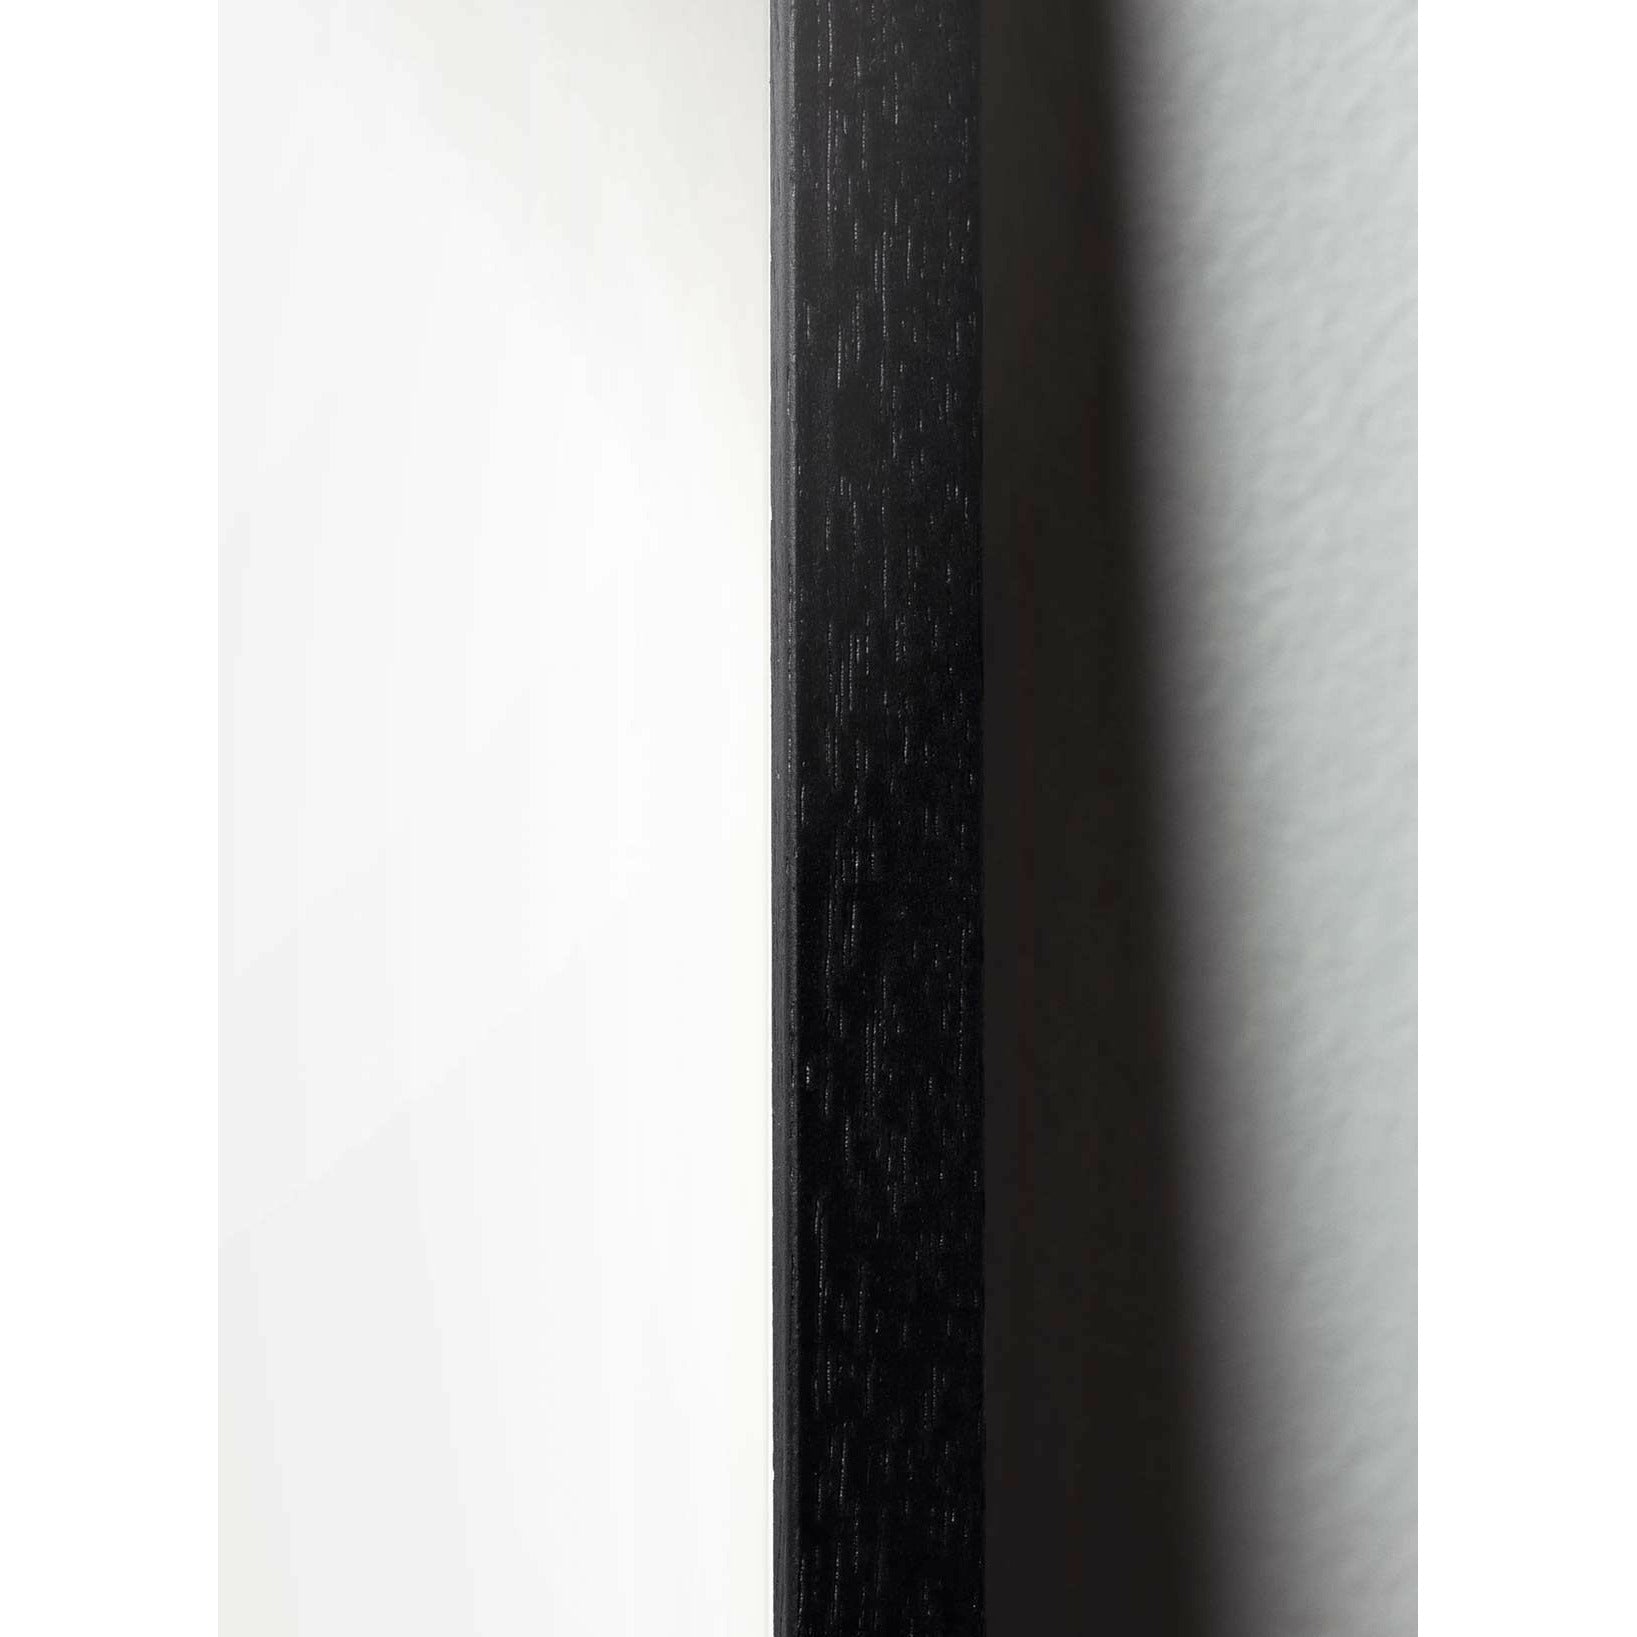 创生的埃尔帕拉德海报，由黑色漆木制成的框架，30x40厘米